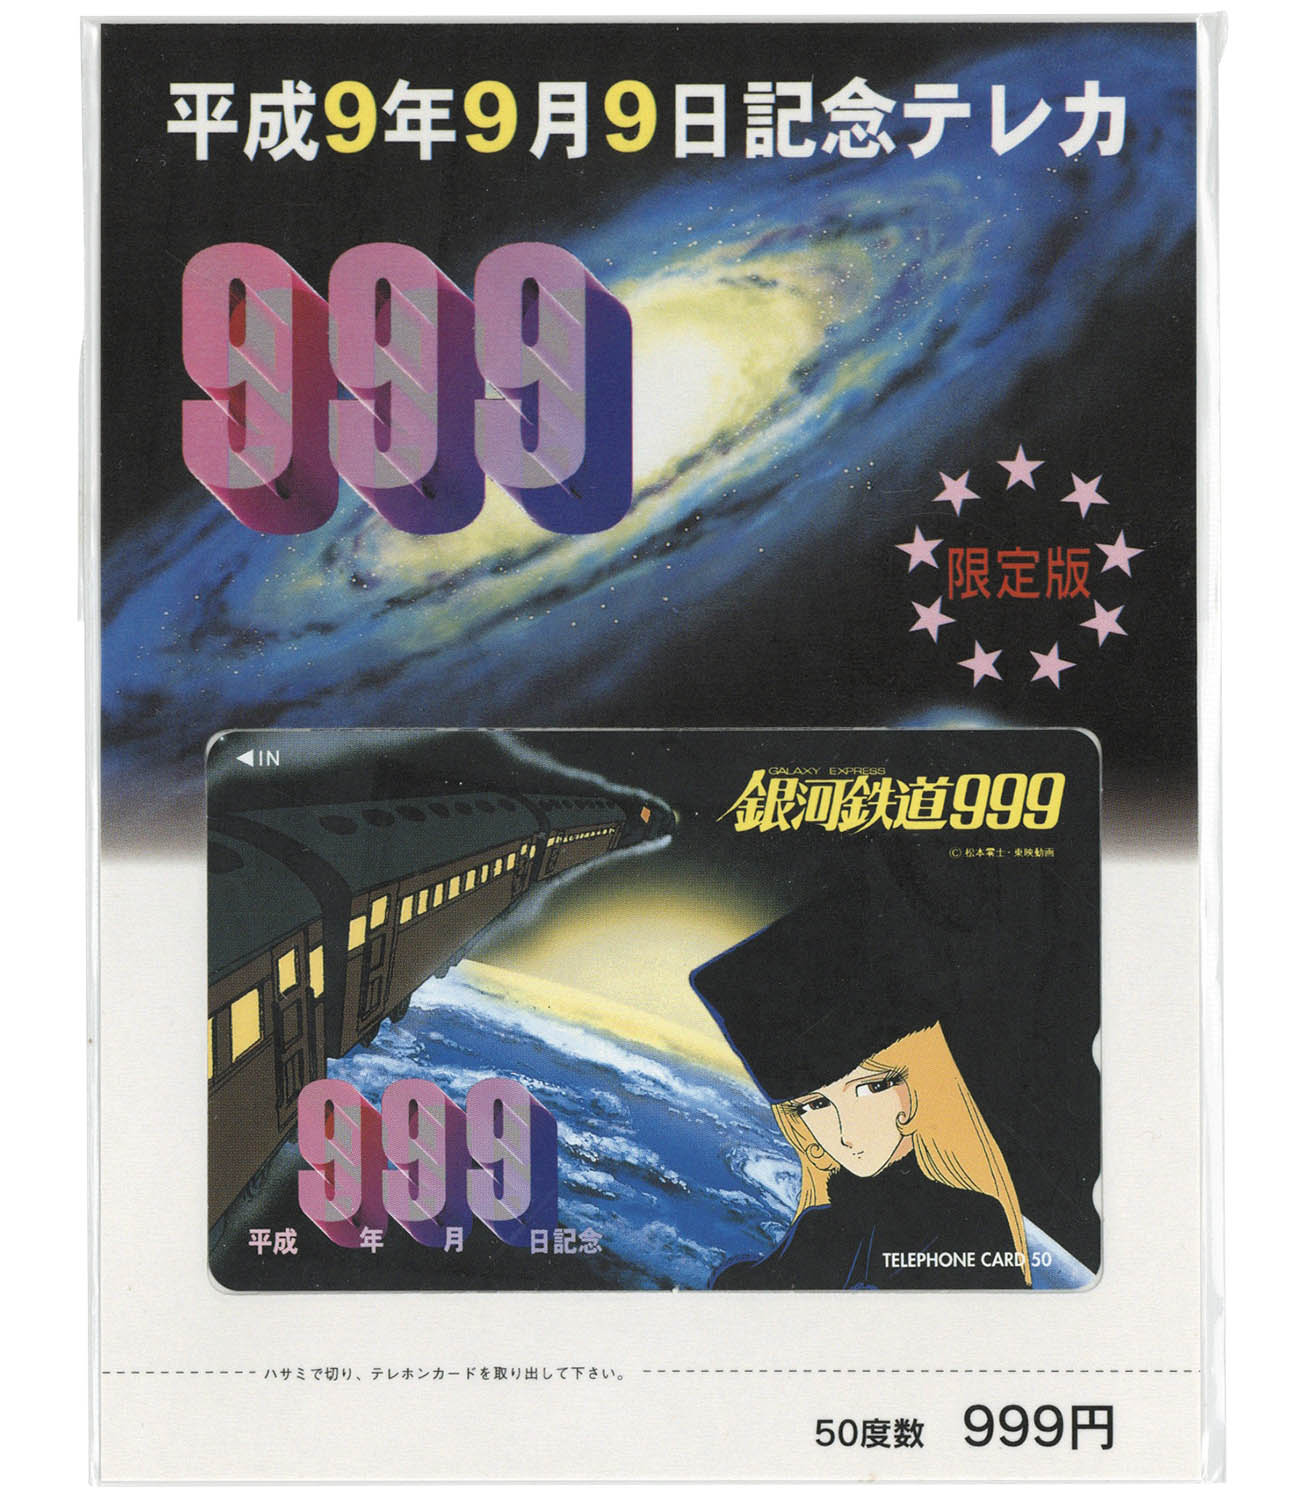 オレカ 銀河鉄道999 平成11年11月11日記念オレンジカード3000 CAR11-0047